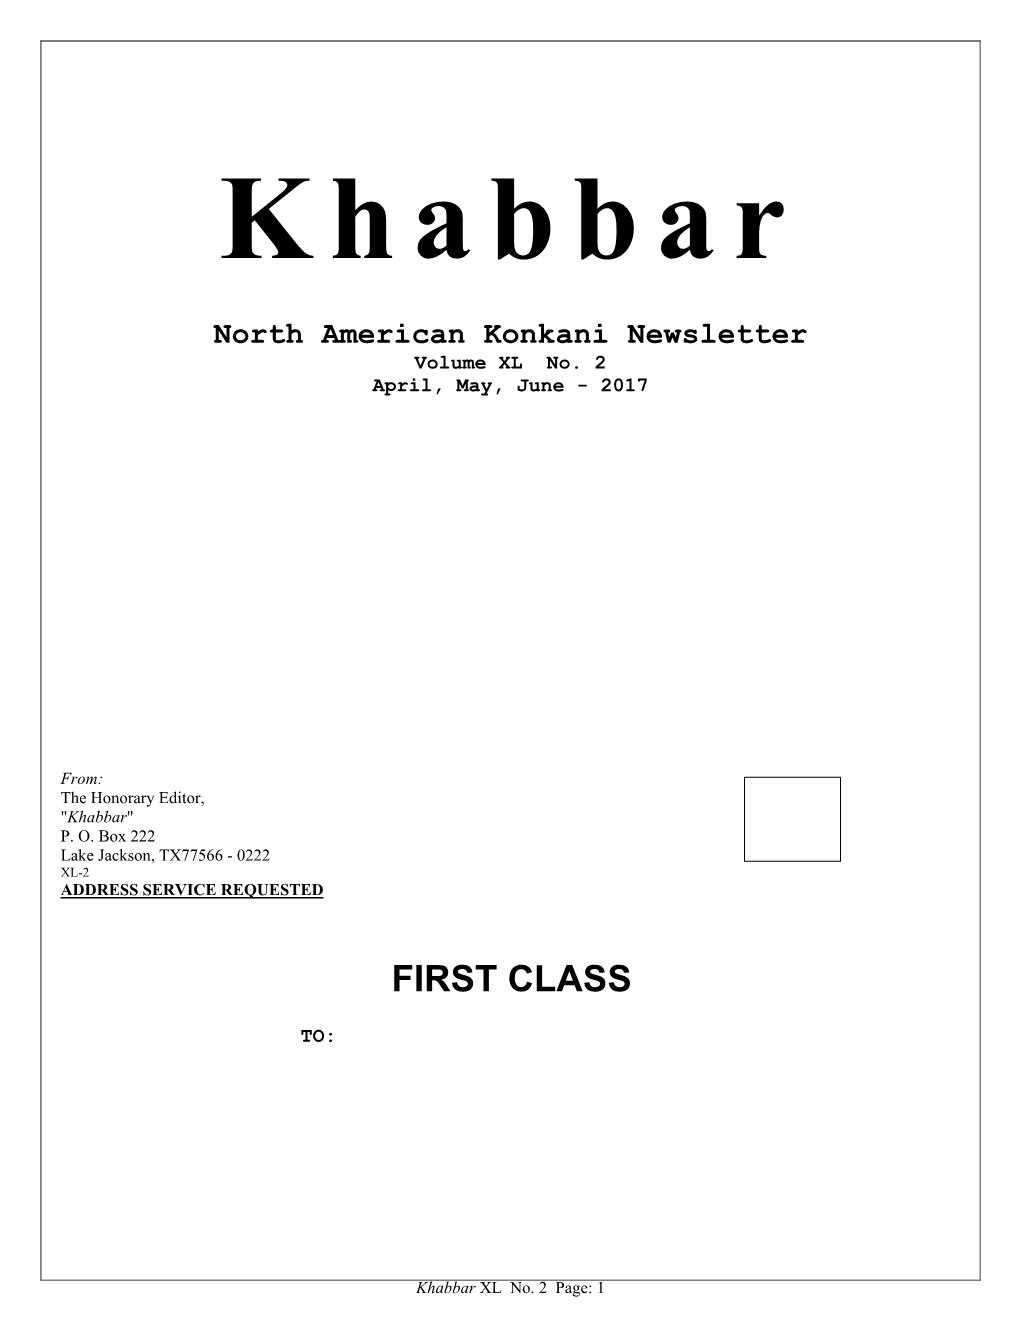 Khabbar Vol. XL No. 2 (April, May, June